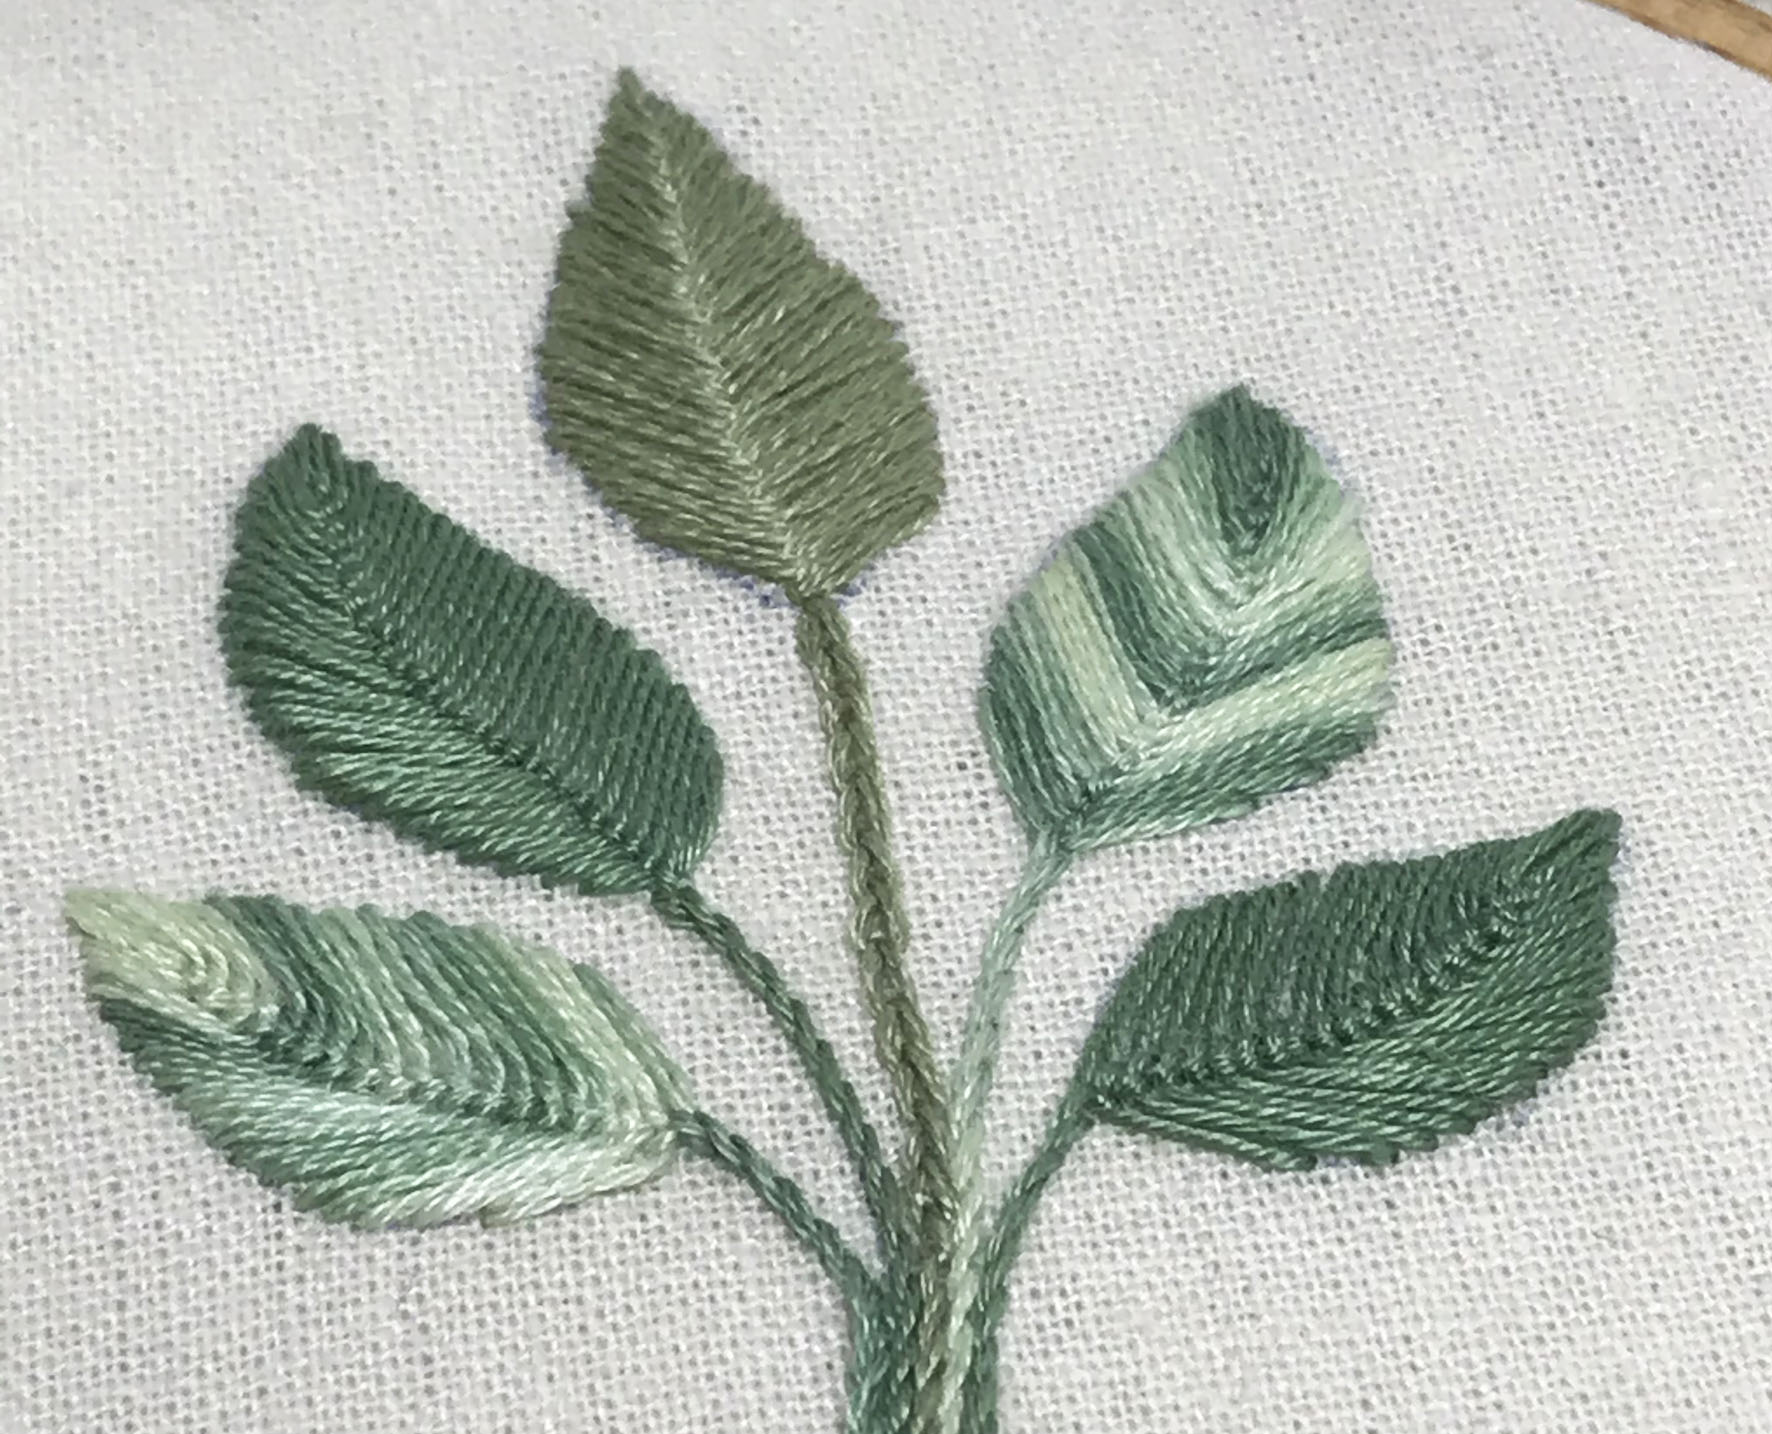 Leaf Sampler - Part 2, Cretan Stitch leaves